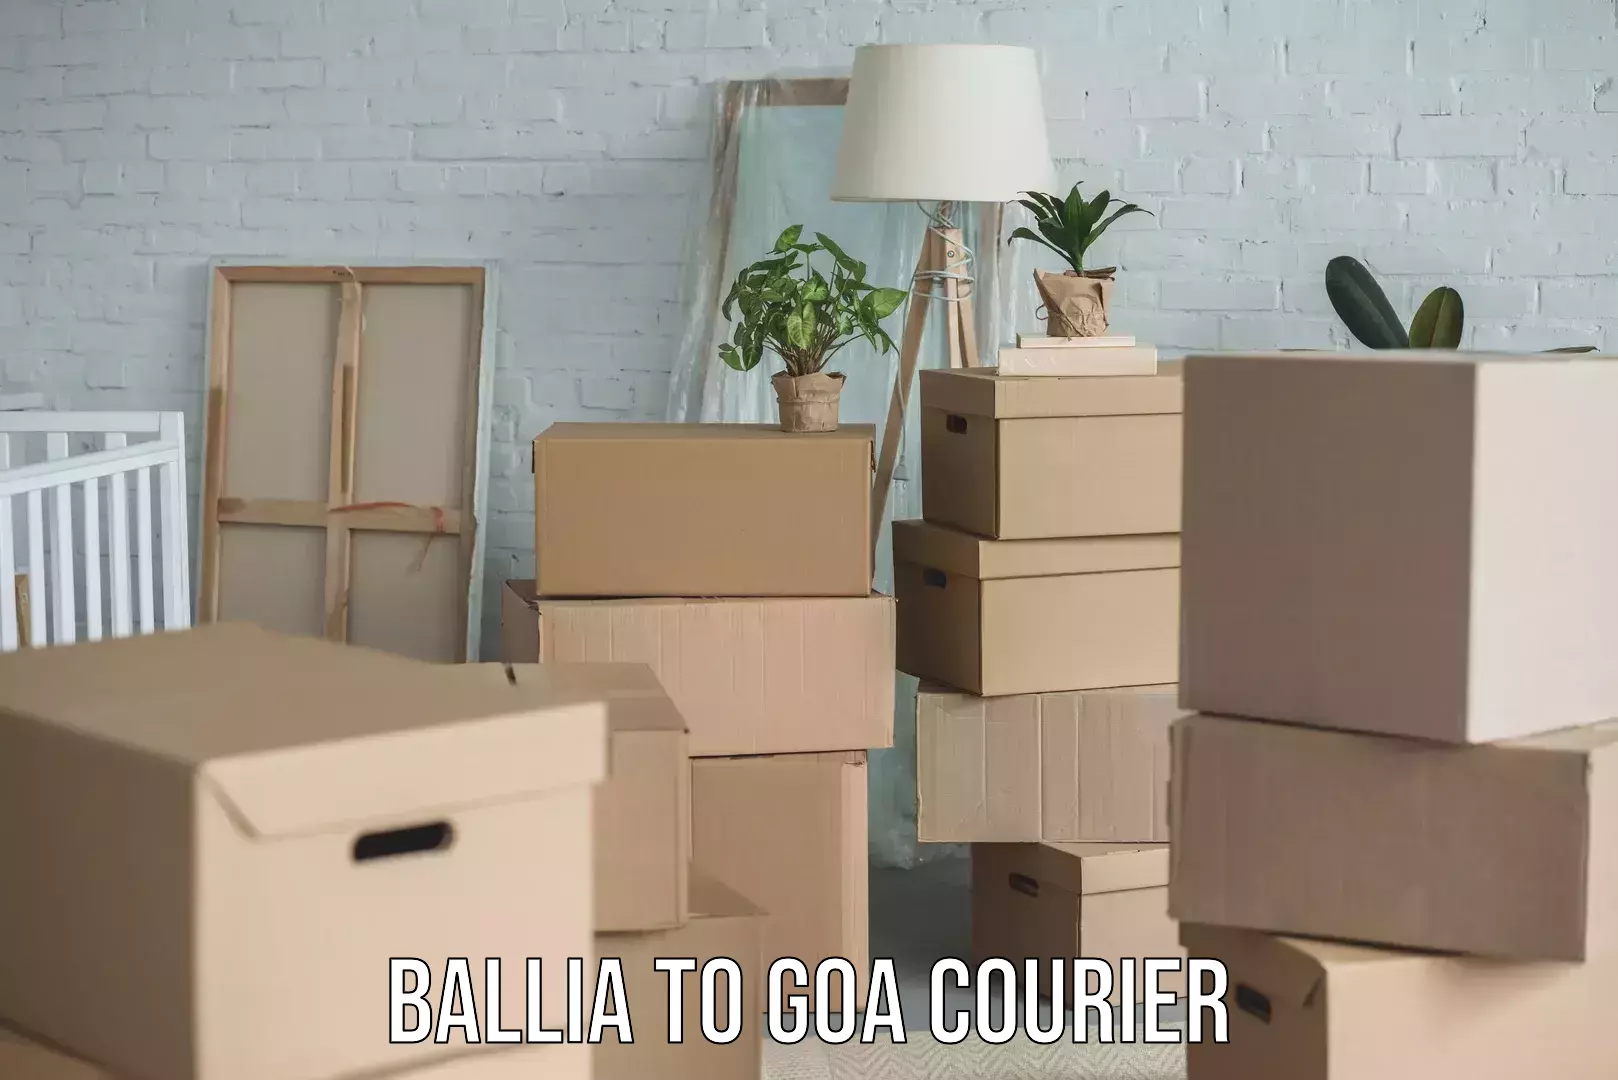 User-friendly courier app Ballia to Goa